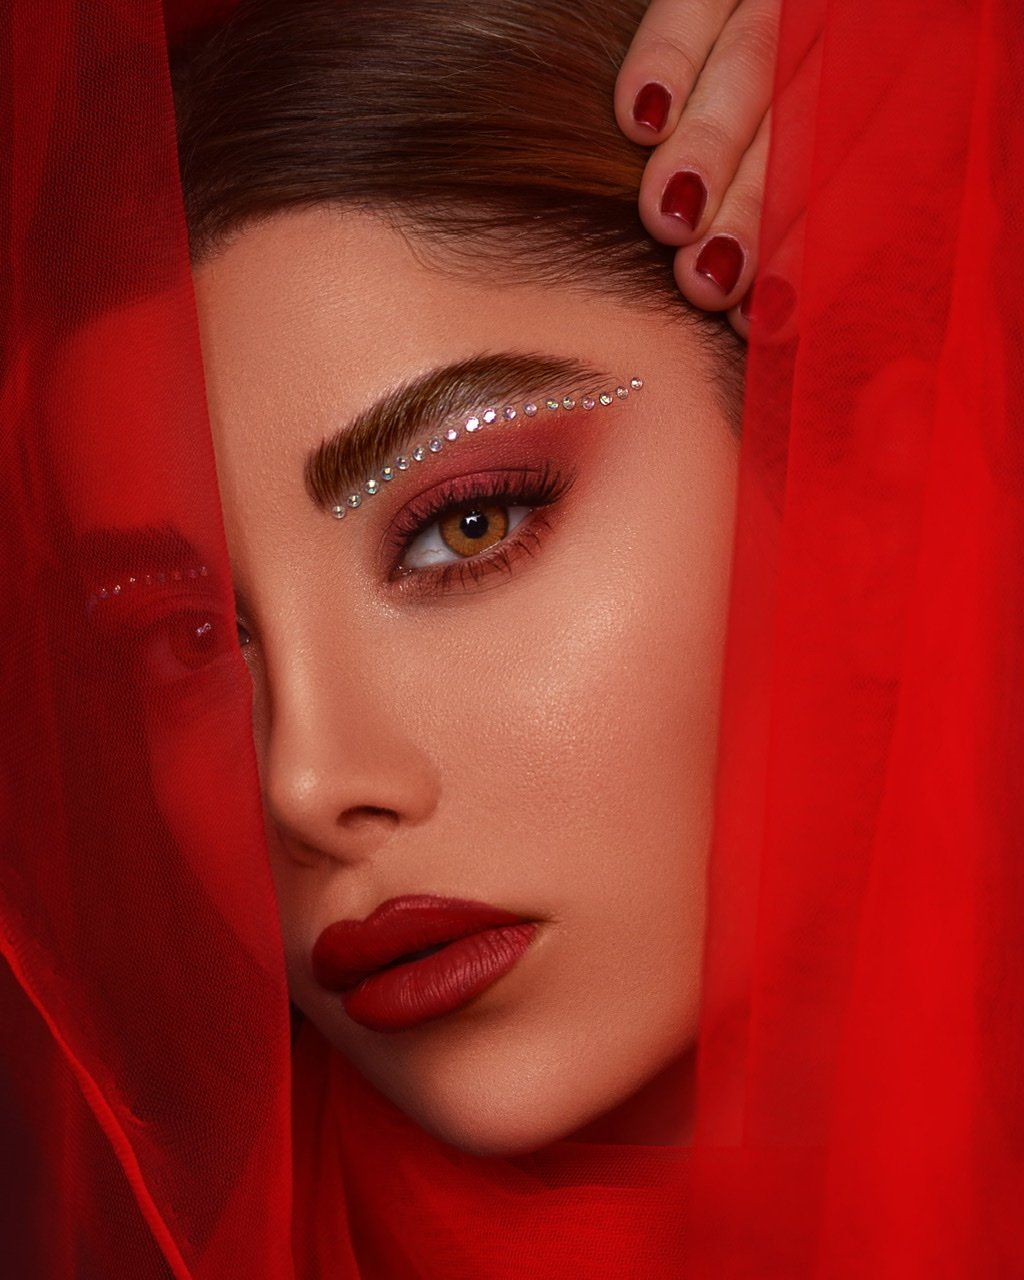 #red #beauty #iran #portrait #iran #makeup, amir seilsepour